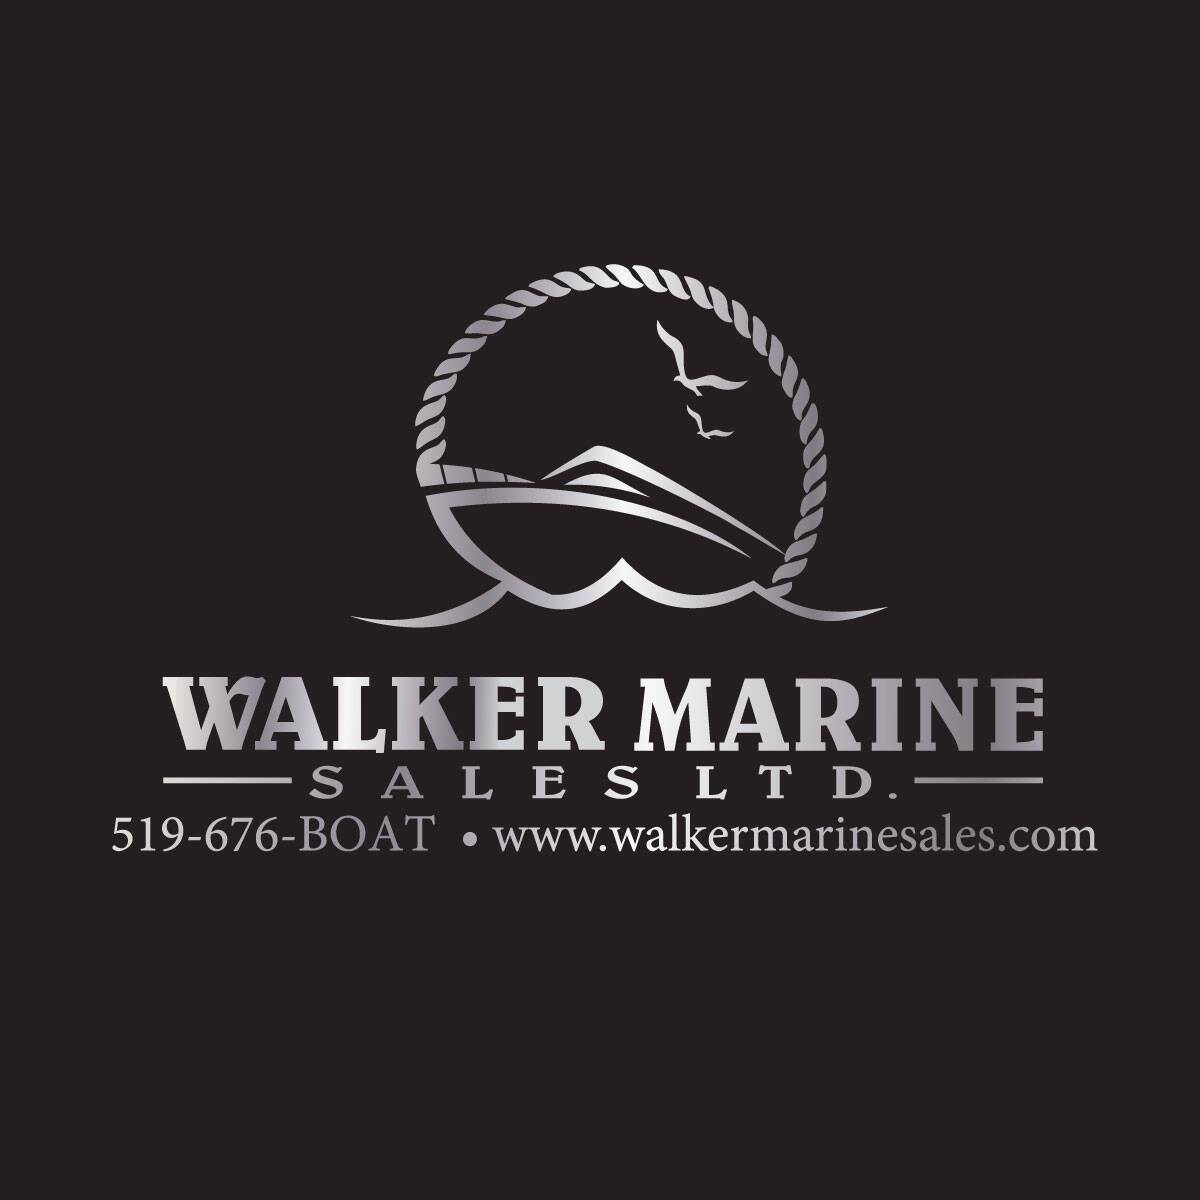 Walker Marine Sales Ltd.